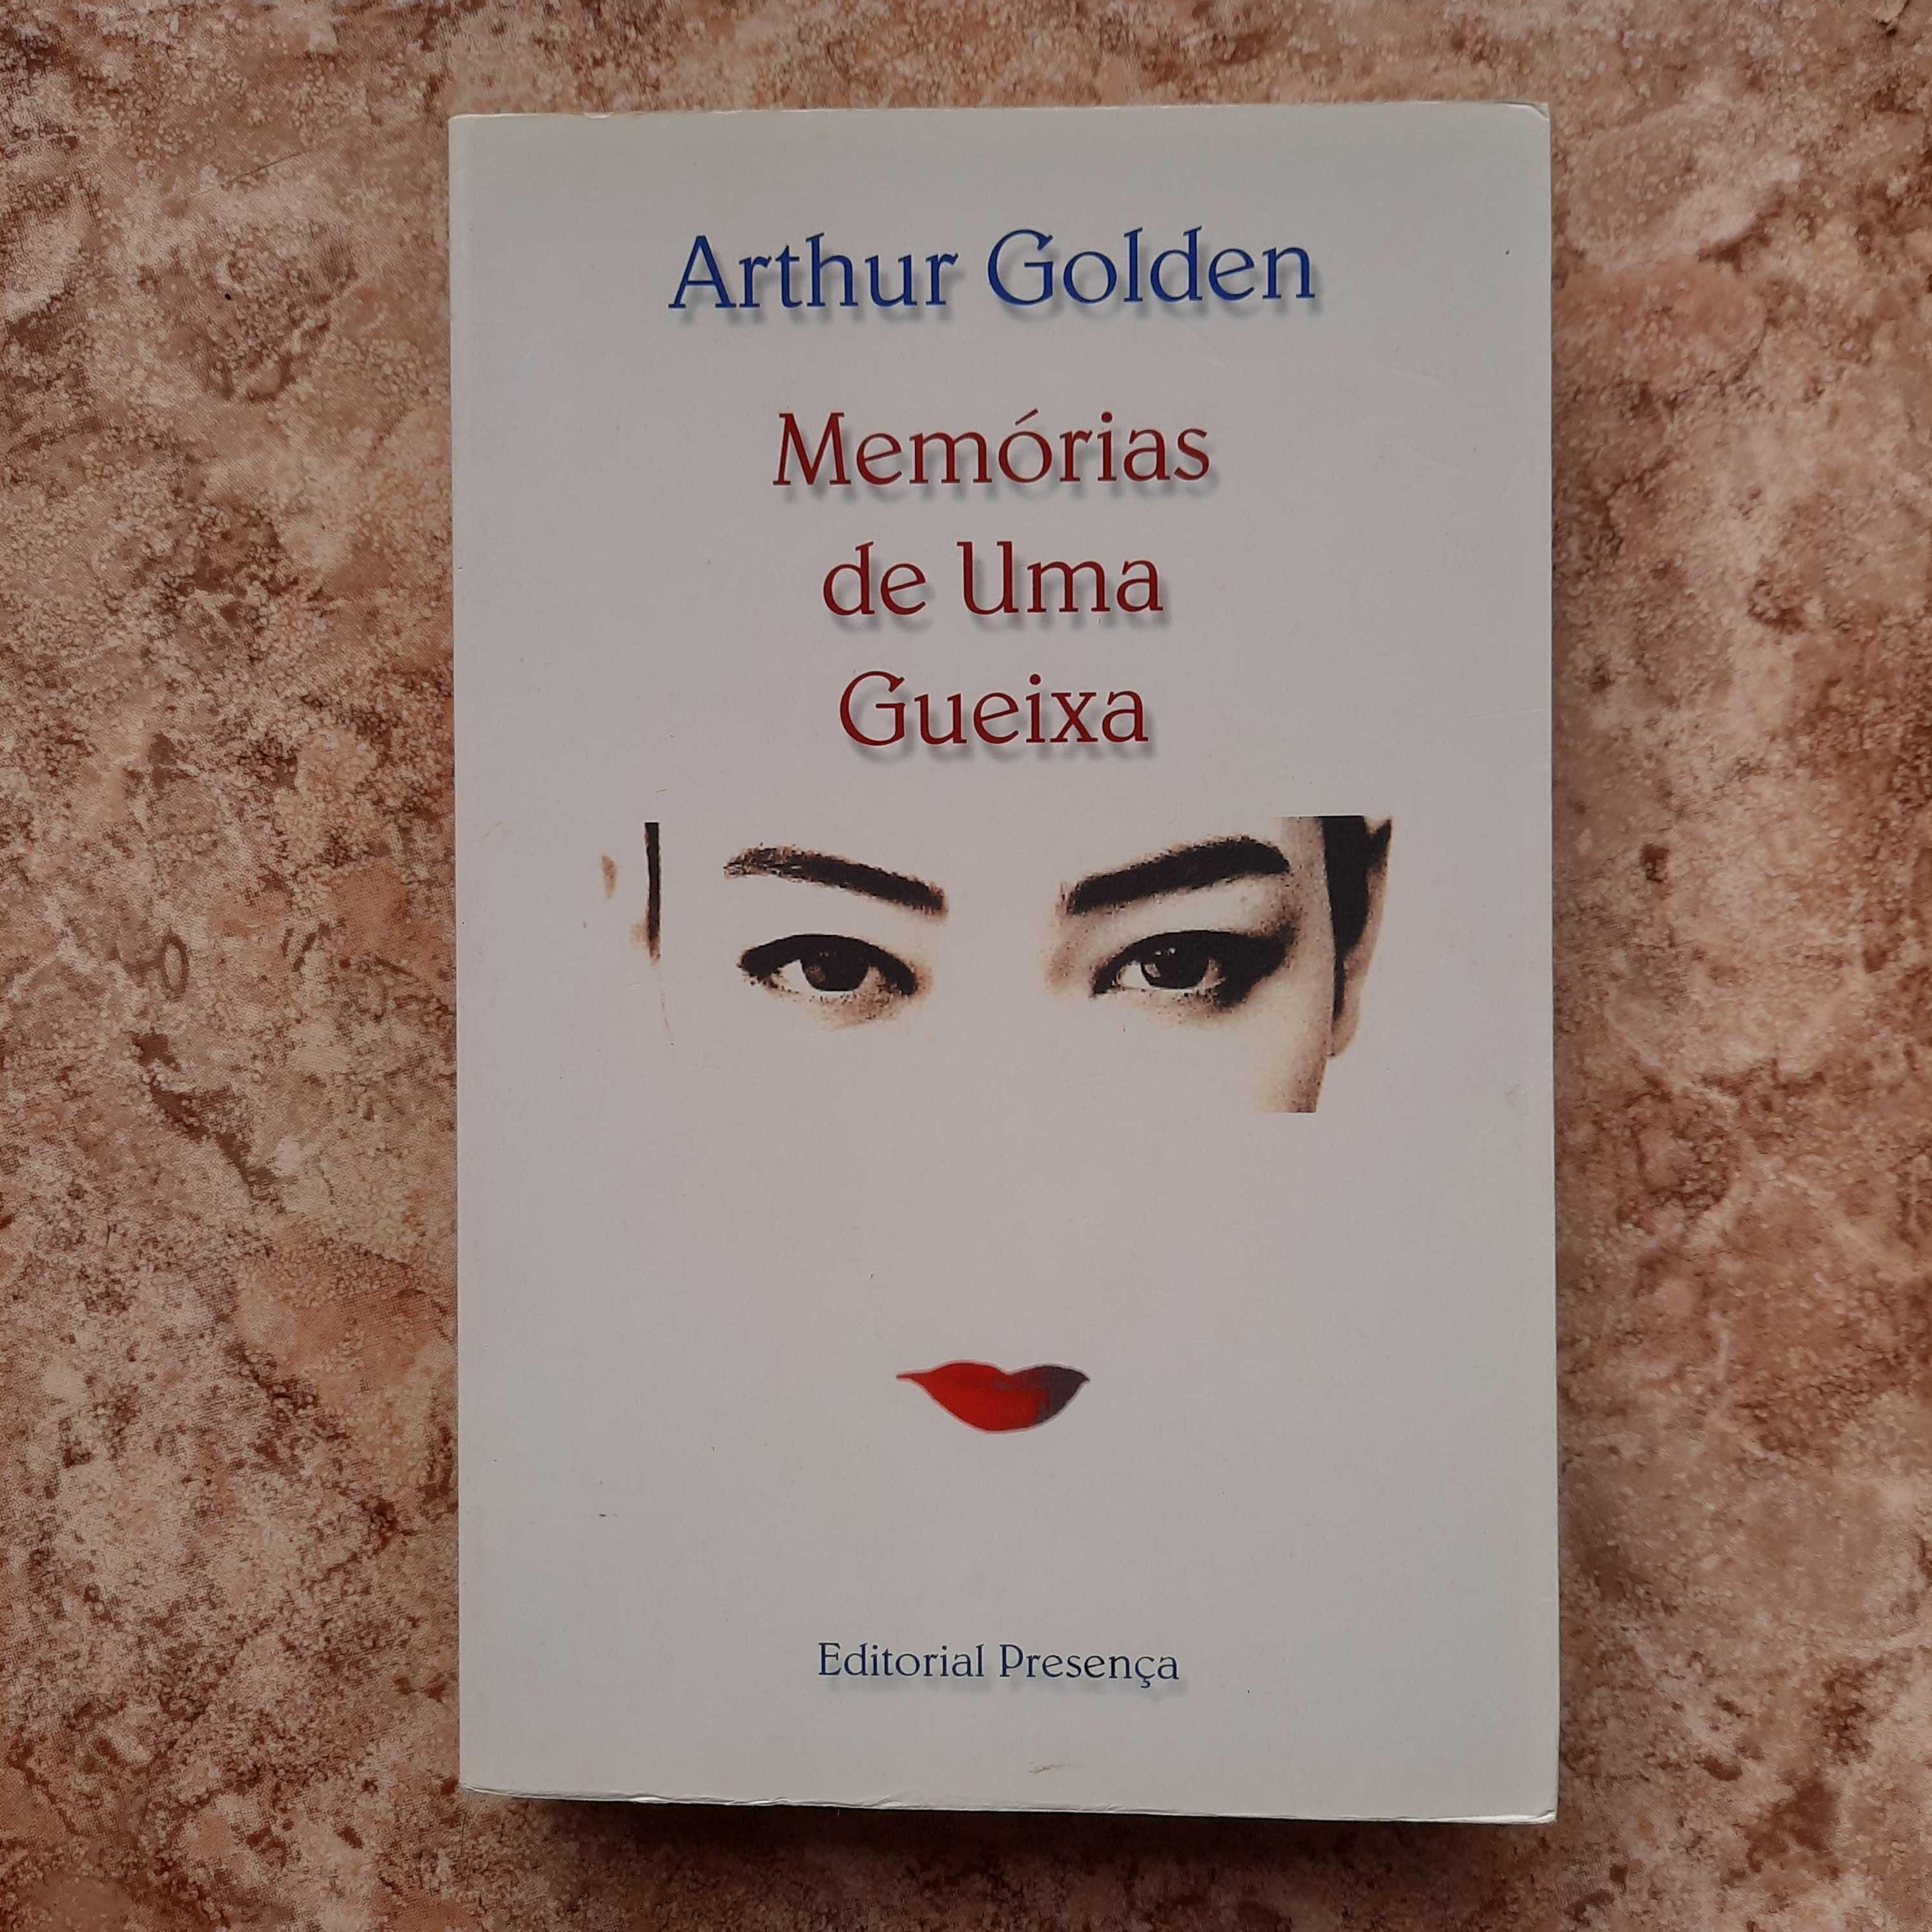 Livro "Memórias de uma gueixa" de Arthur Golden